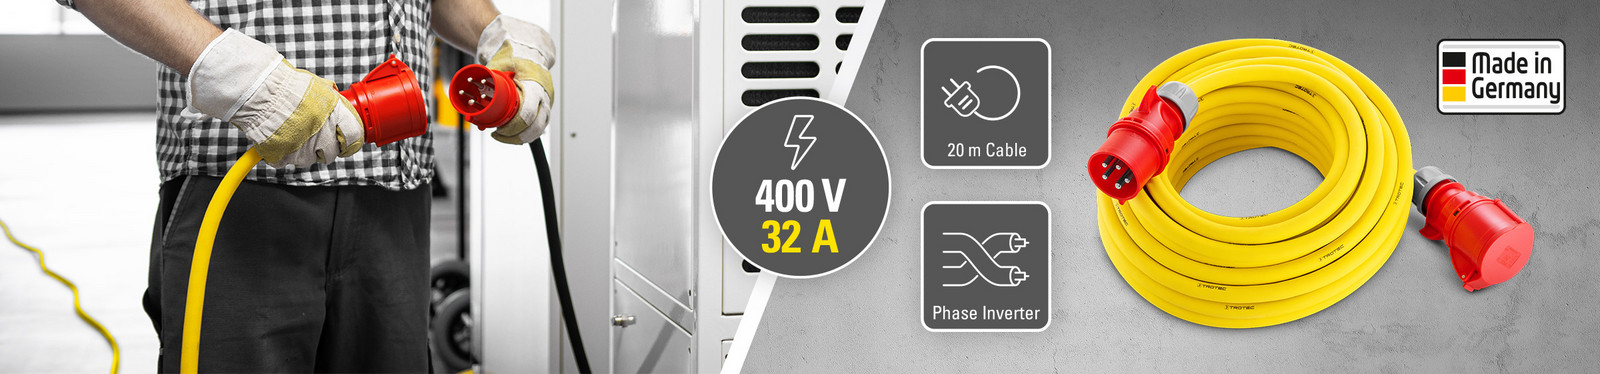 Professionele verlengkabel 400 V (32 A) – Made in Germany